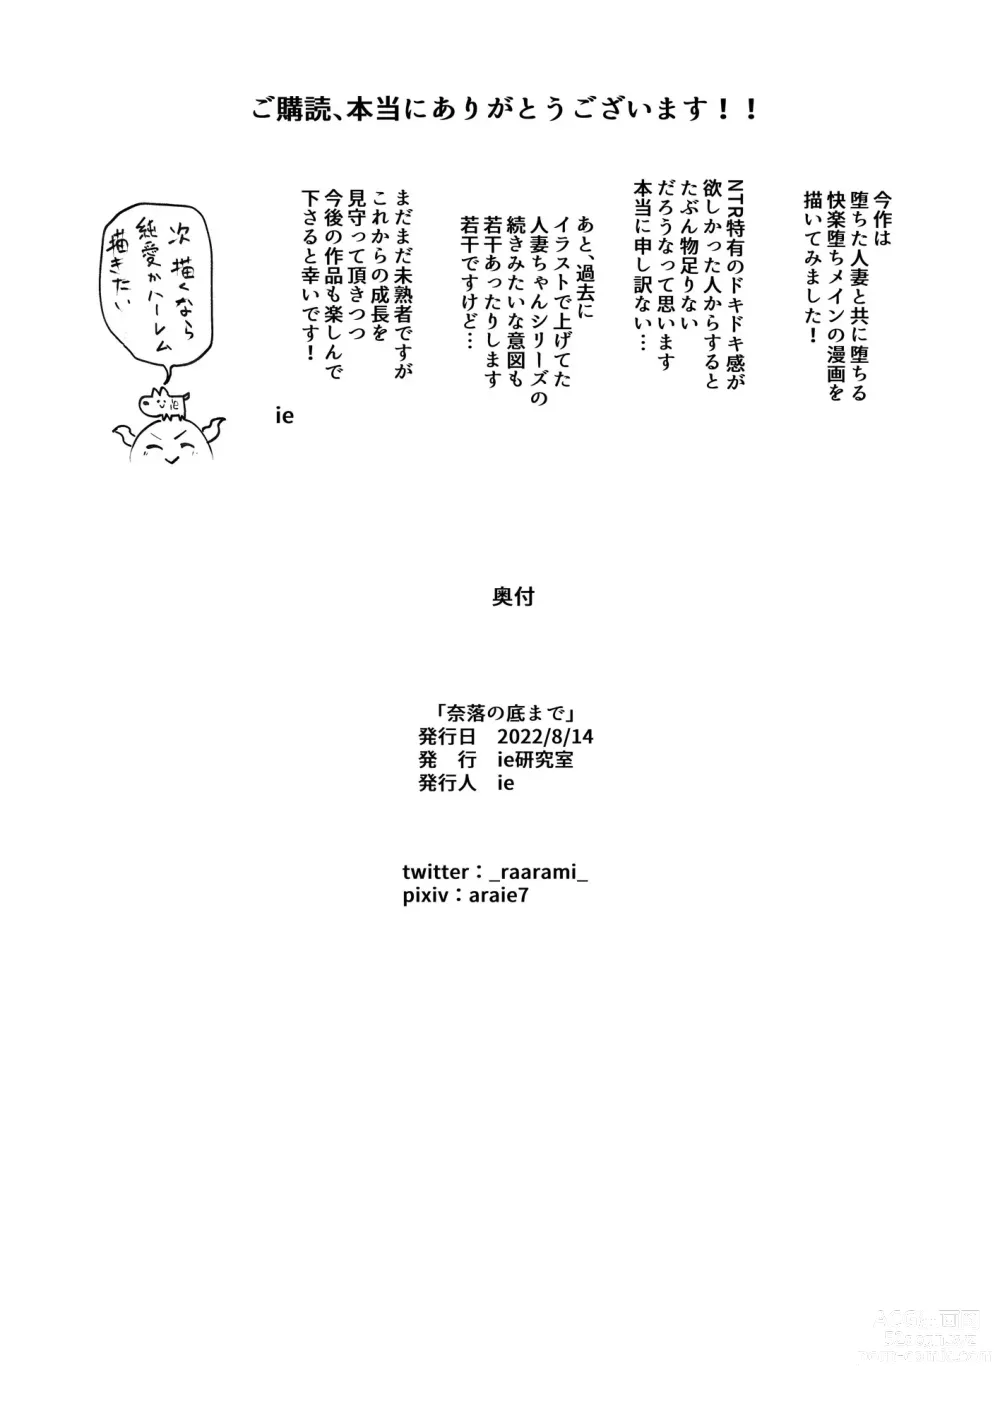 Page 33 of doujinshi Naraku no Soko made